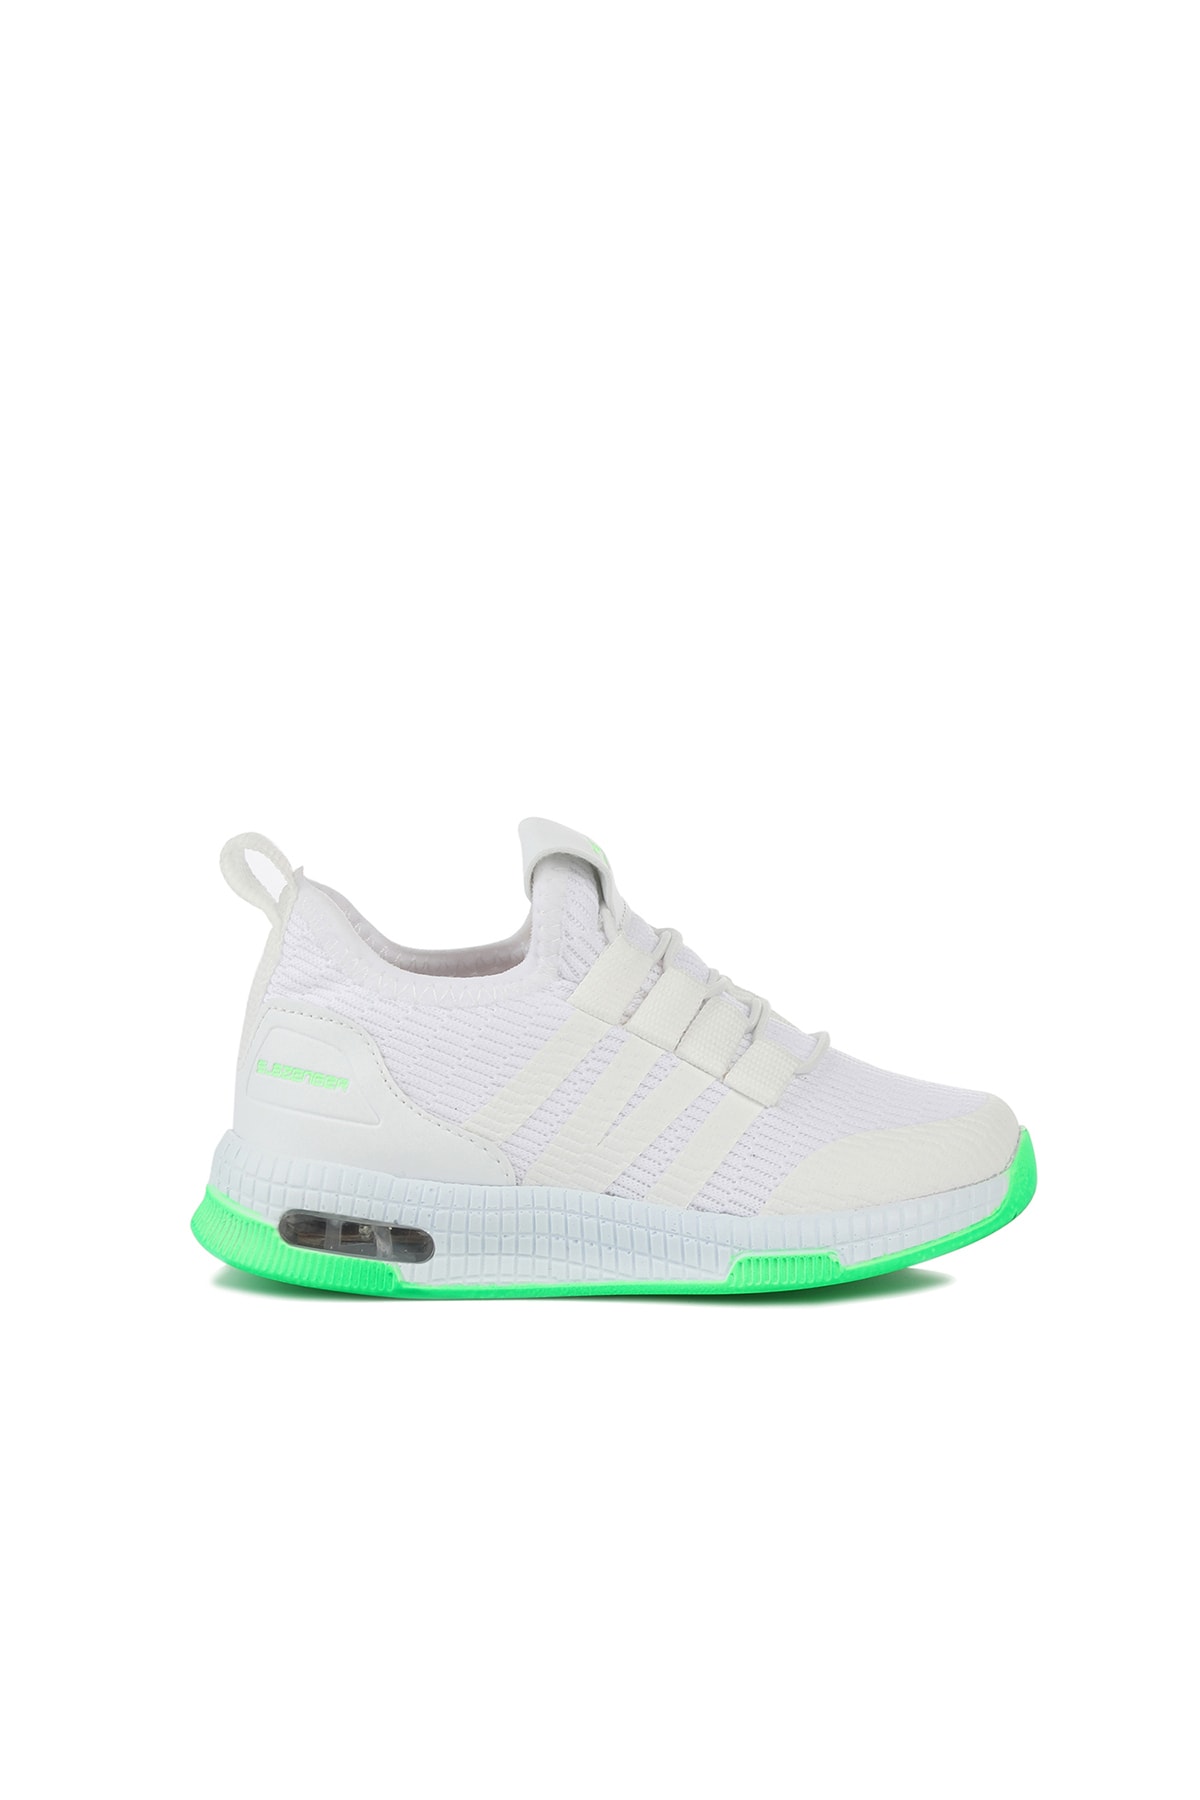 Slazenger Ebba Sneaker Erkek Çocuk Ayakkabı Beyaz / Yeşil